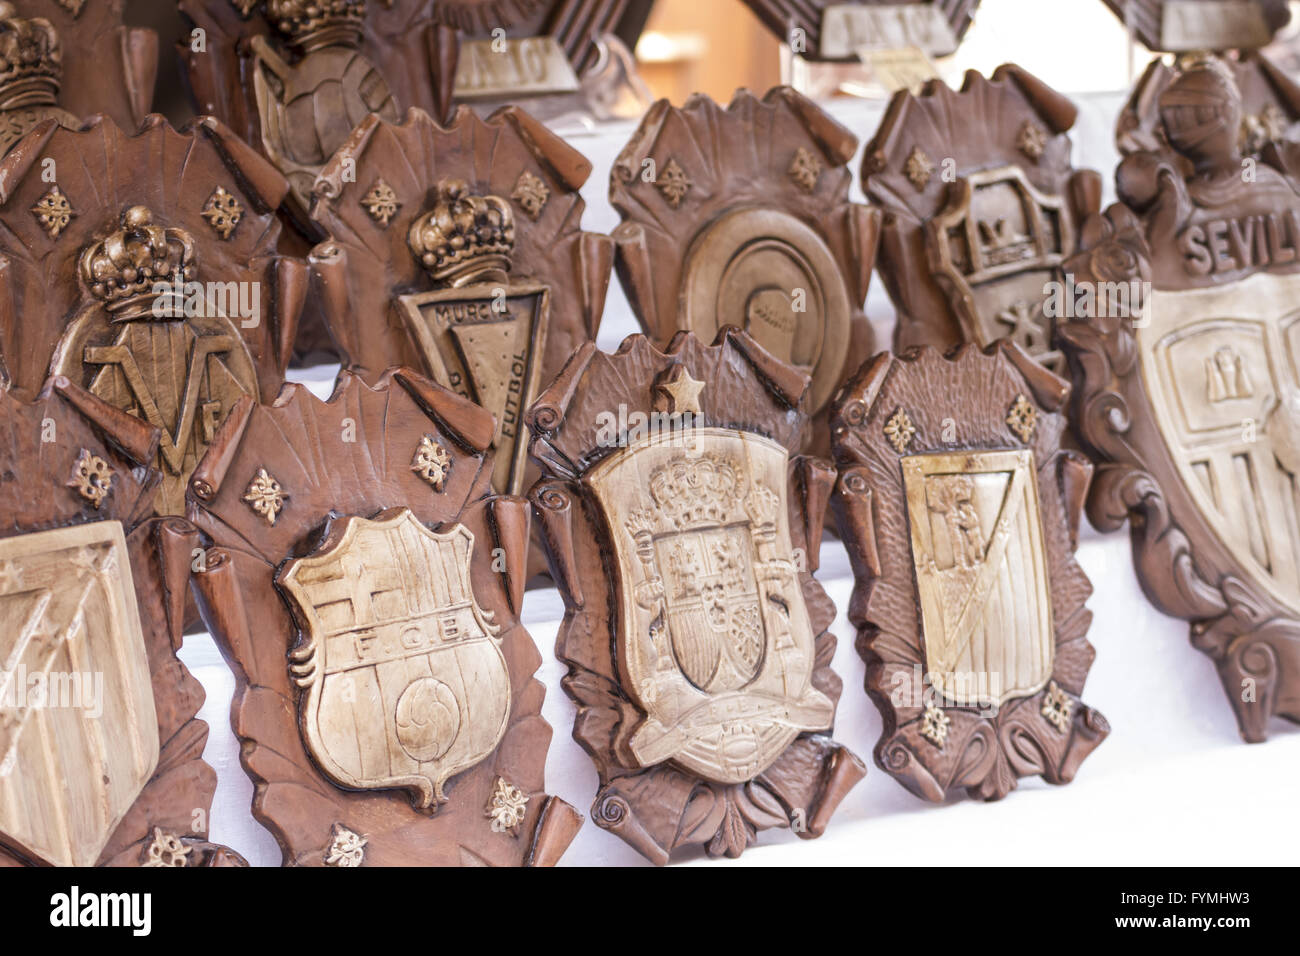 Handgemacht, mittelalterliches Handwerk Messe, Tradition und Kultur in Spanien Stockfoto